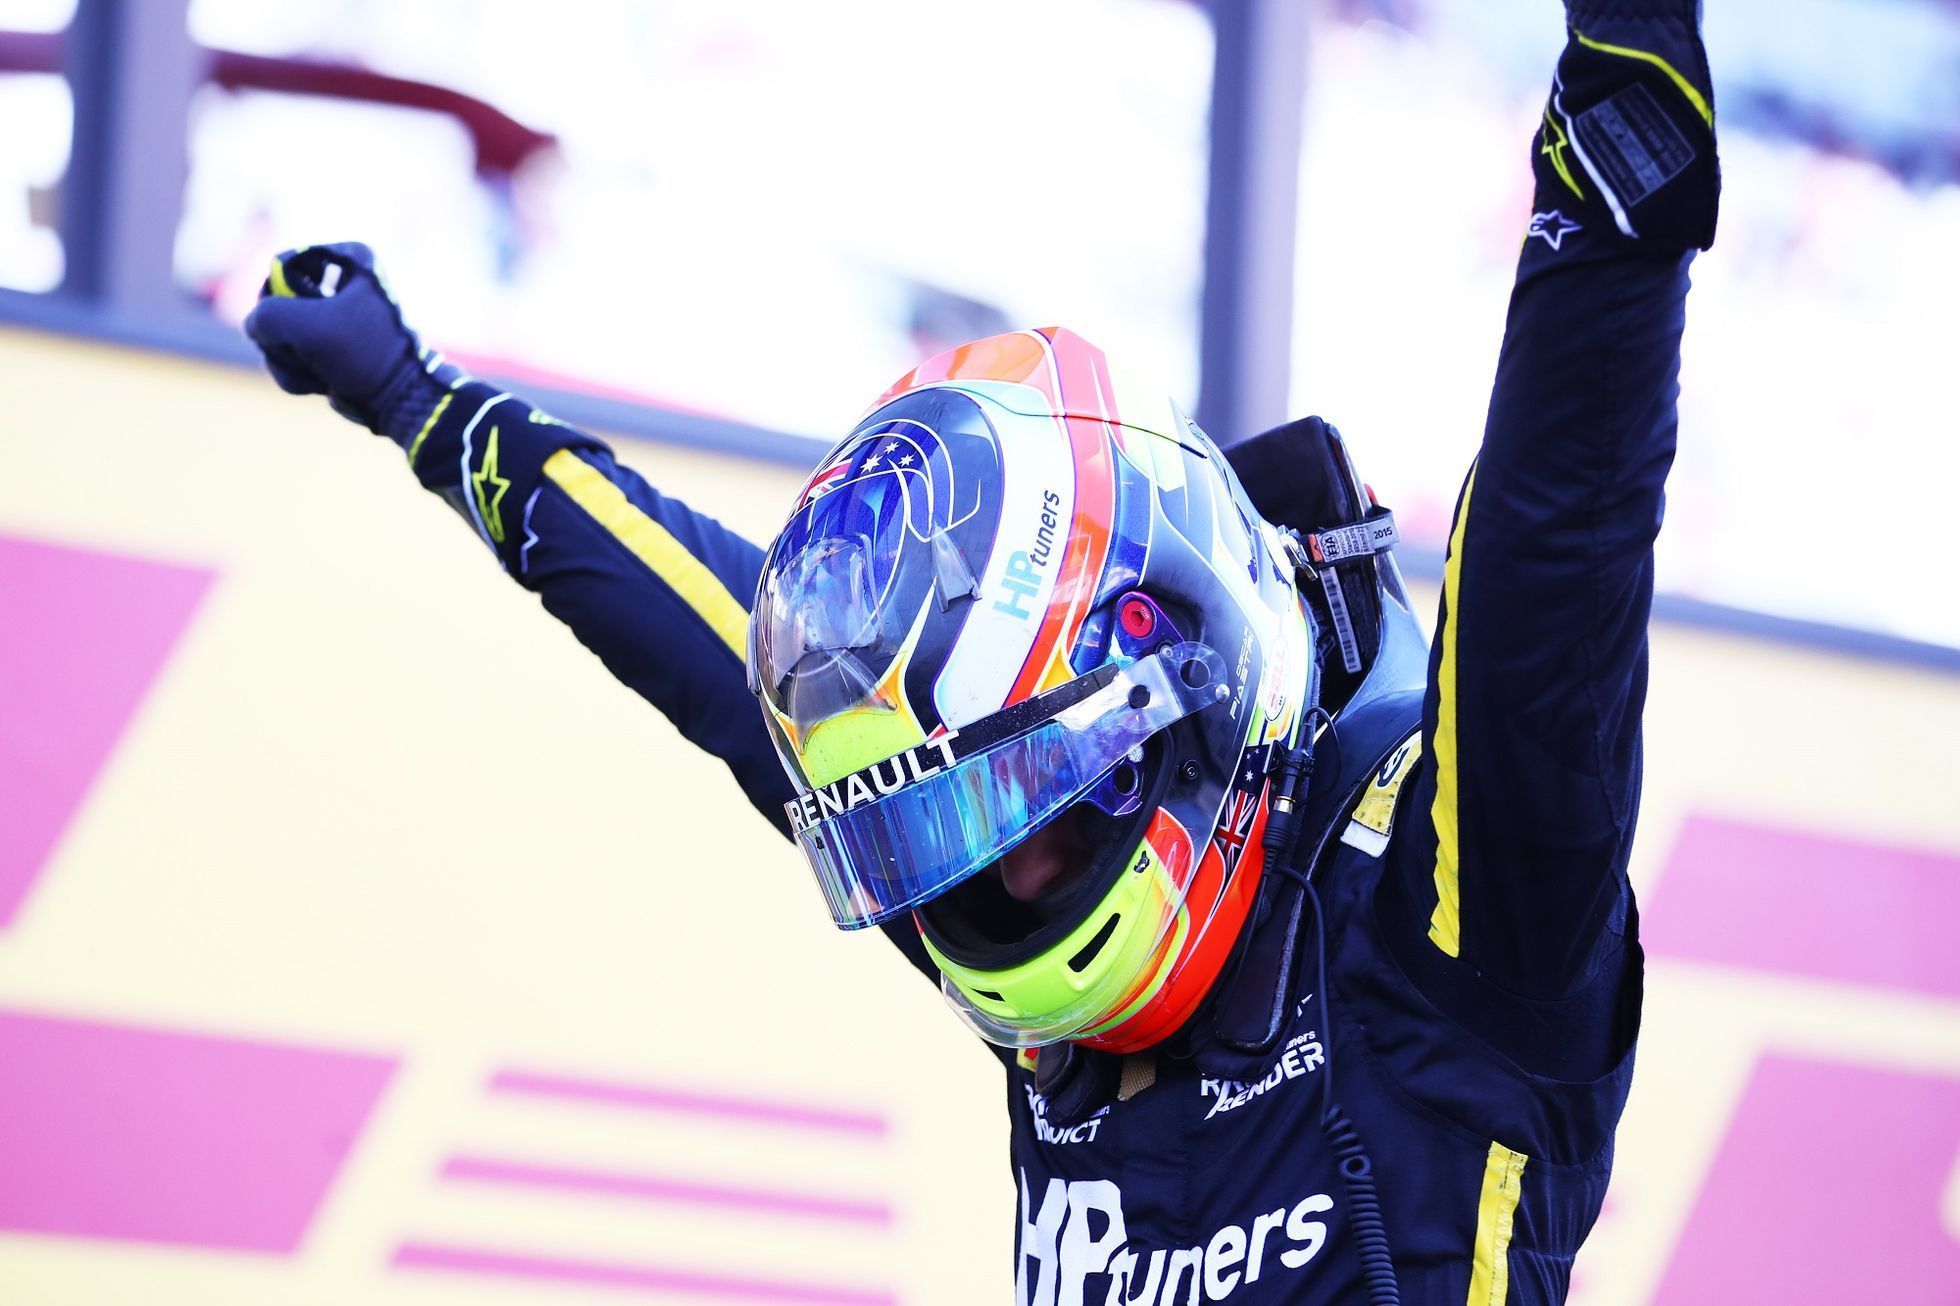 Oscar Piastri slaví titul šampiona formule 3 v sezoně 2020